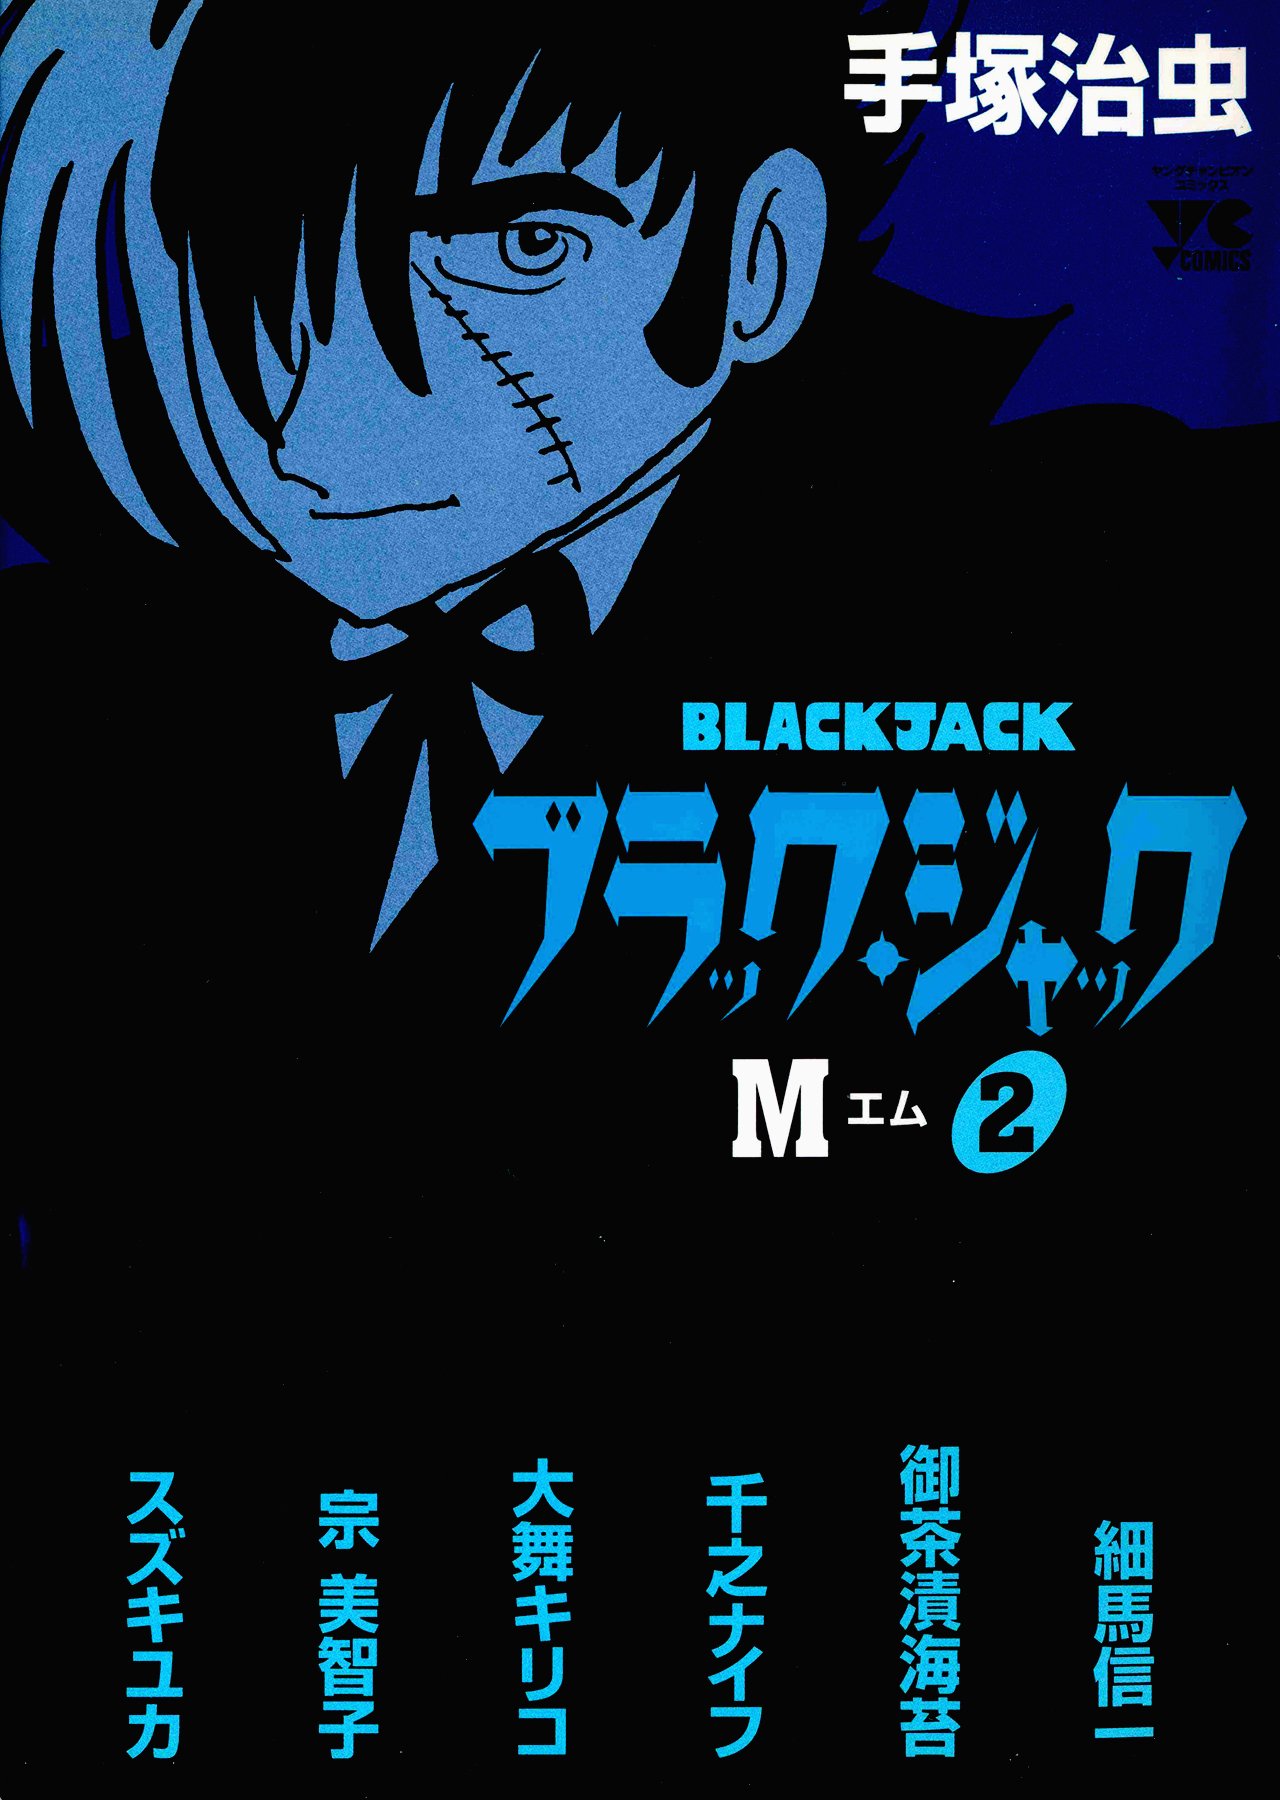 Black Jack M